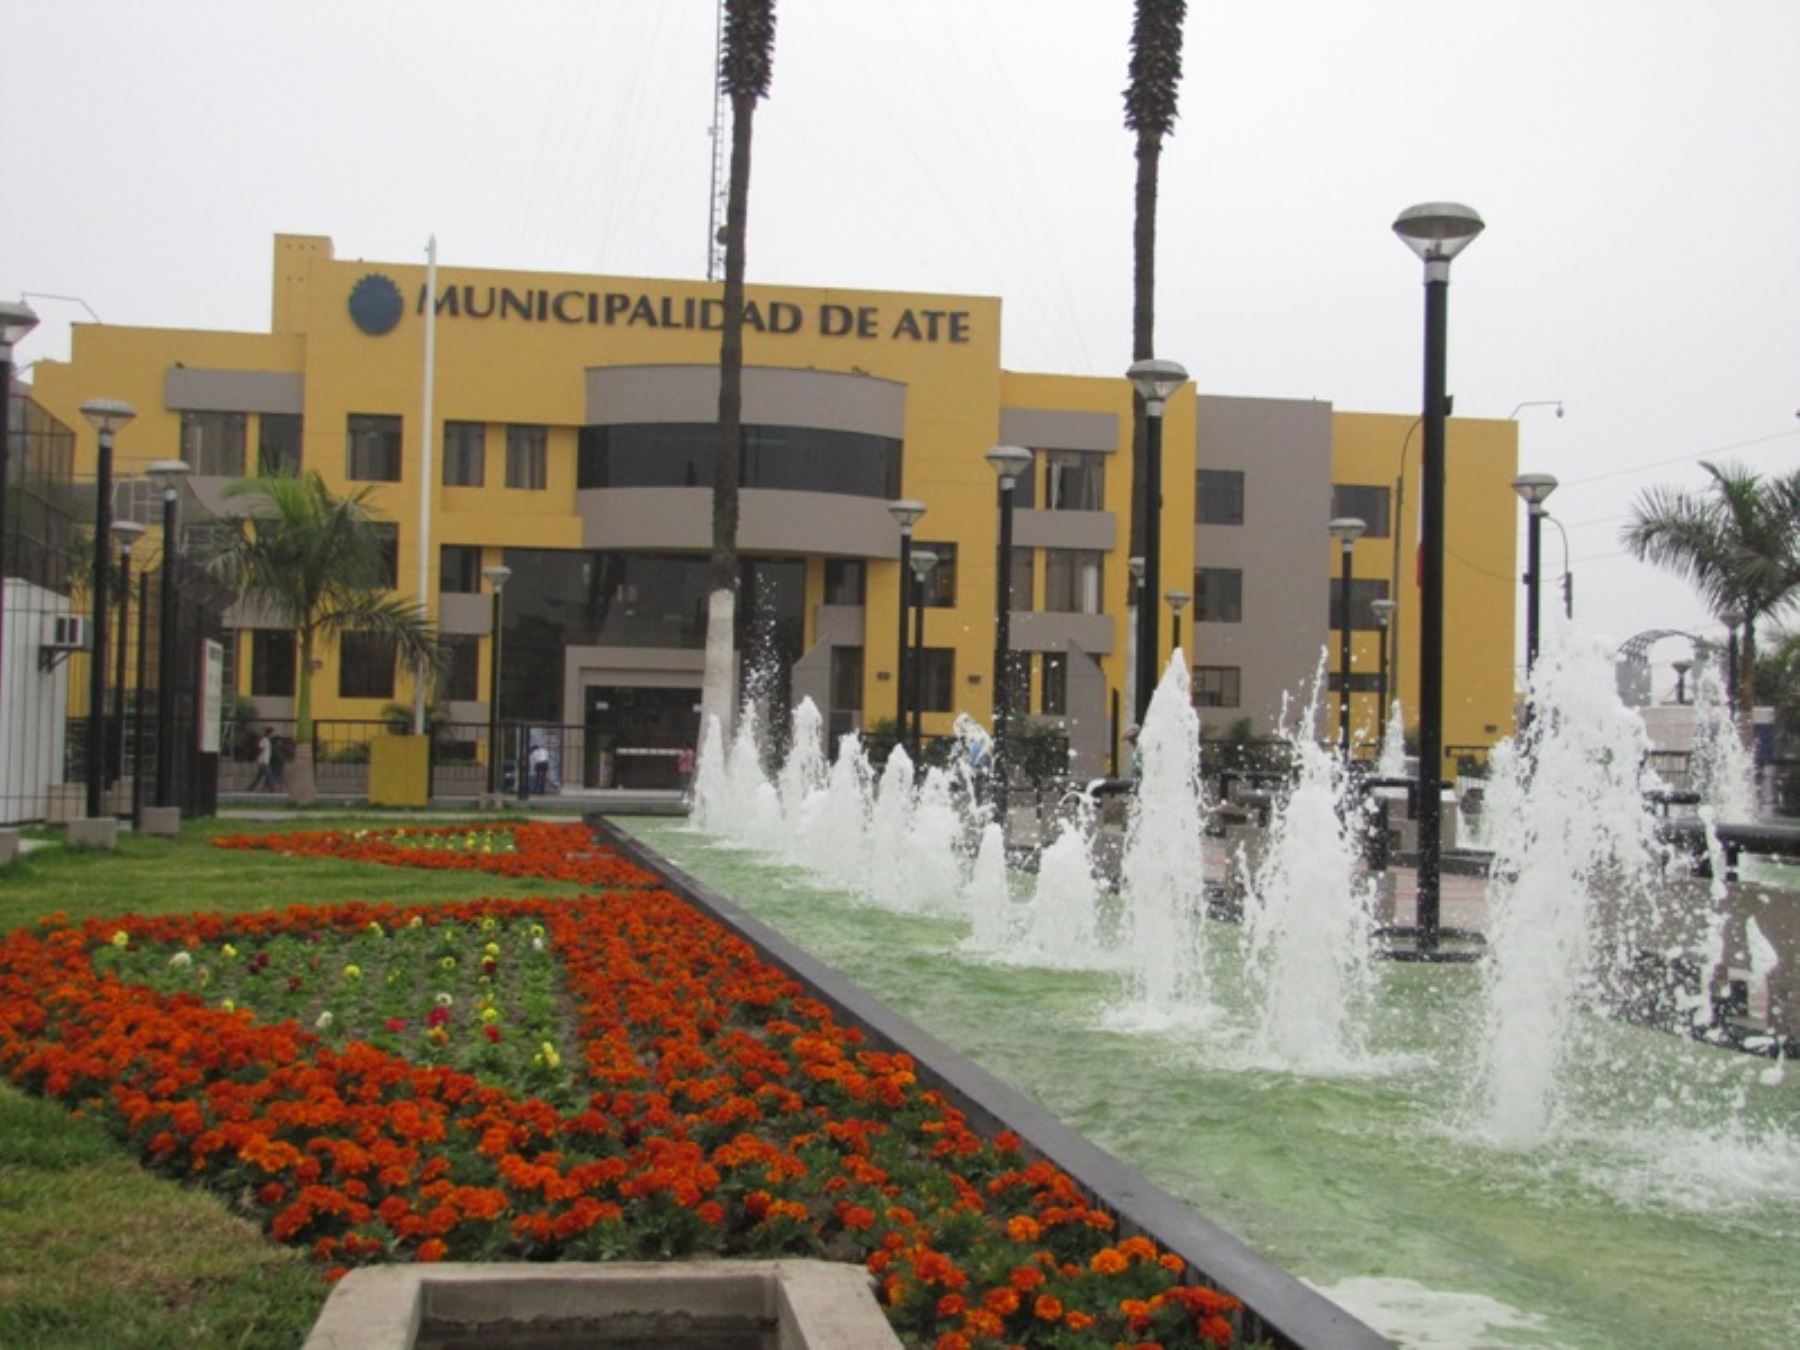 El distrito de Ate será sede de la Cumbre Municipal del Bicentenario 2021. Foto: Andina/Difusión